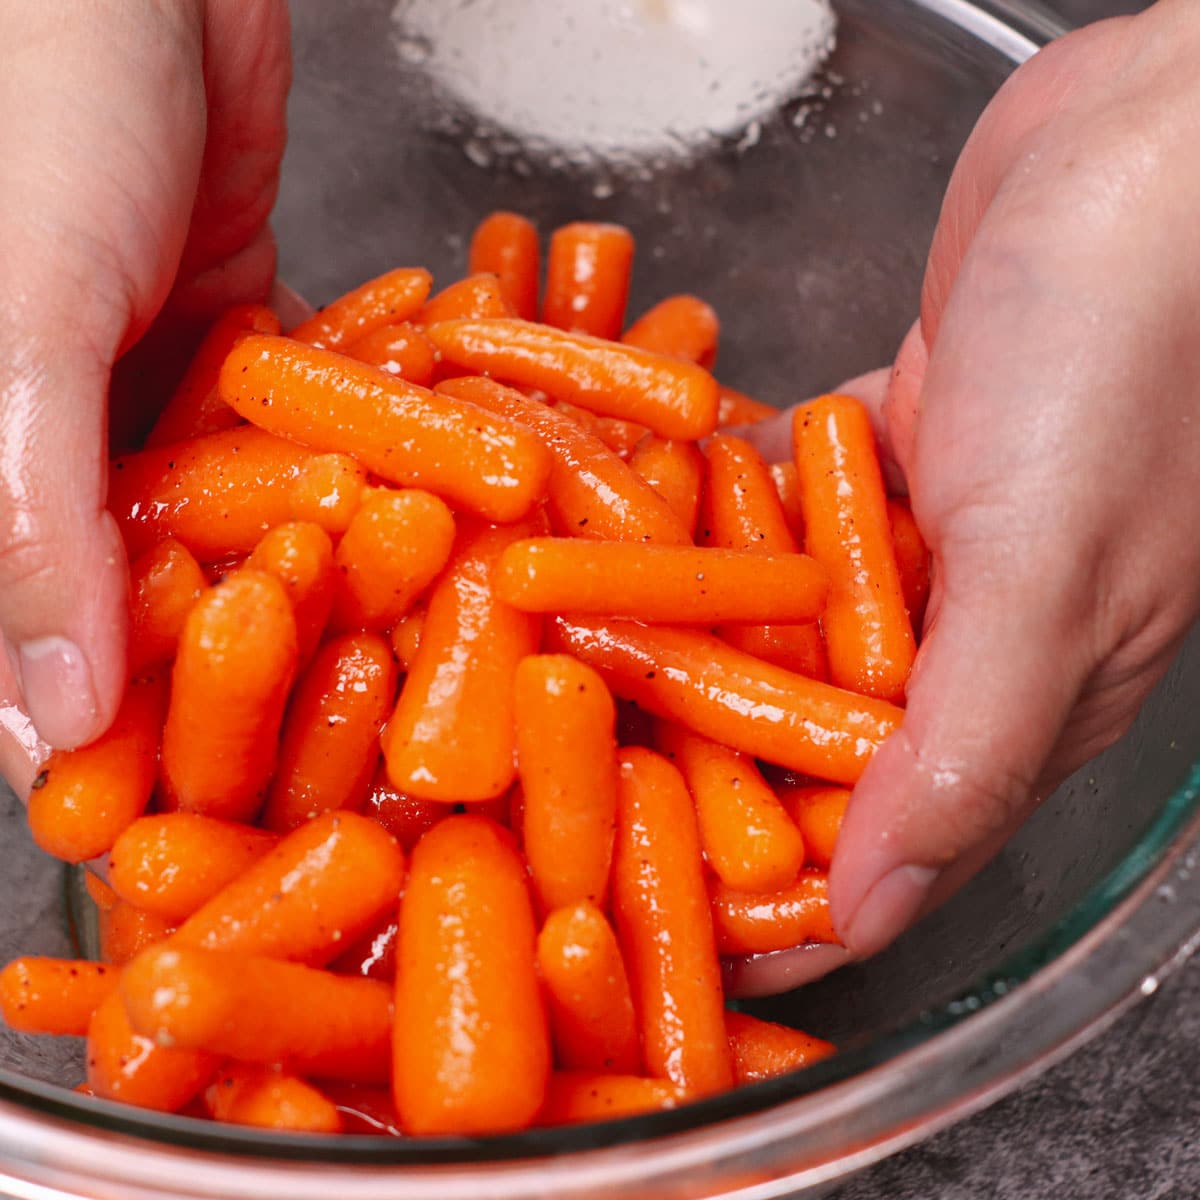 Seasoning baby carrots with avocado oil, salt, pepper, brown sugar